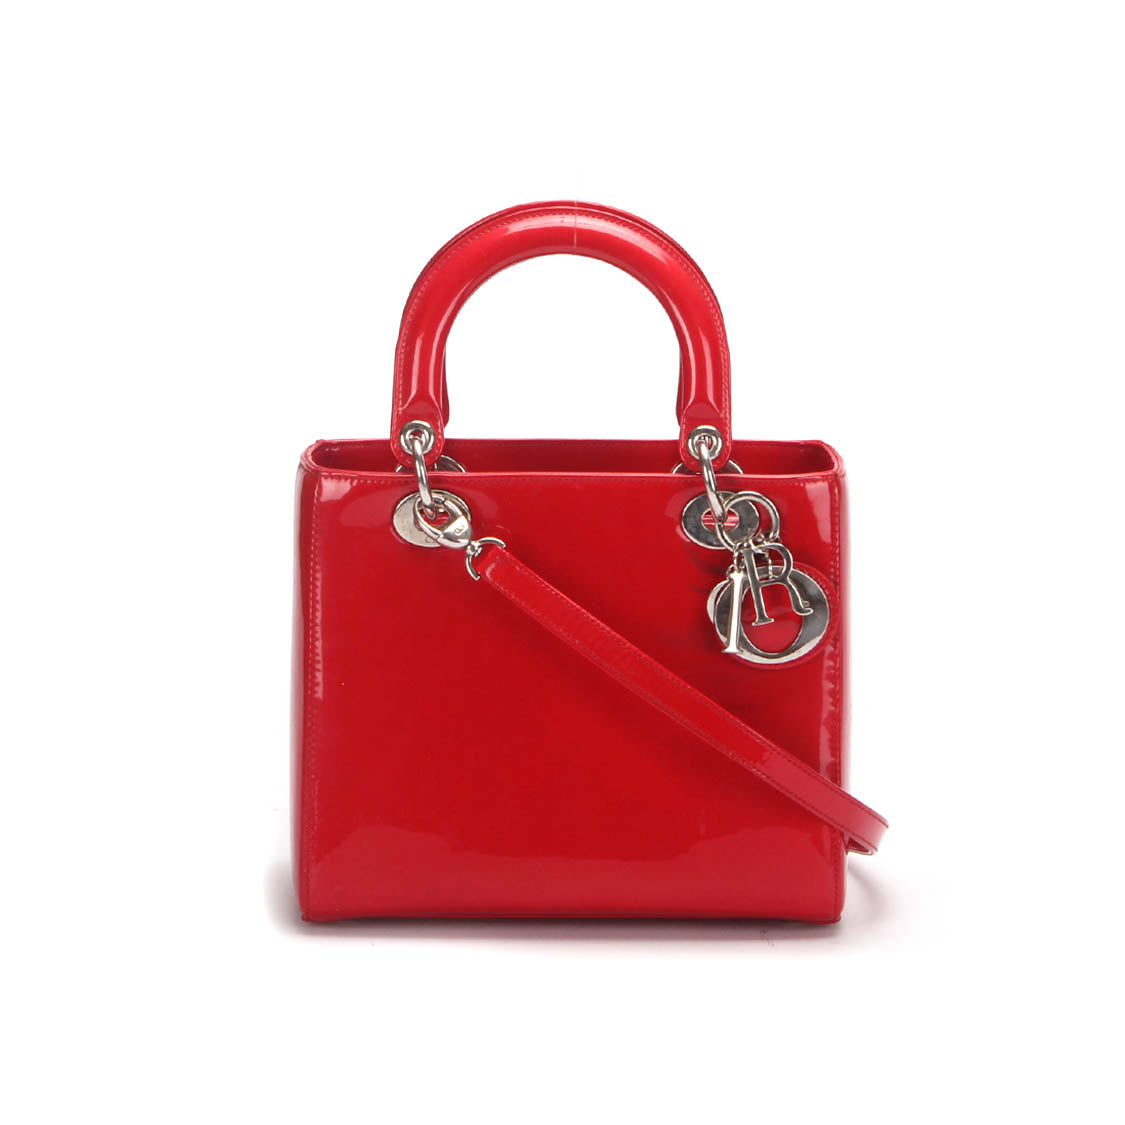 Lady Dior Patent Leather Shoulder Bag